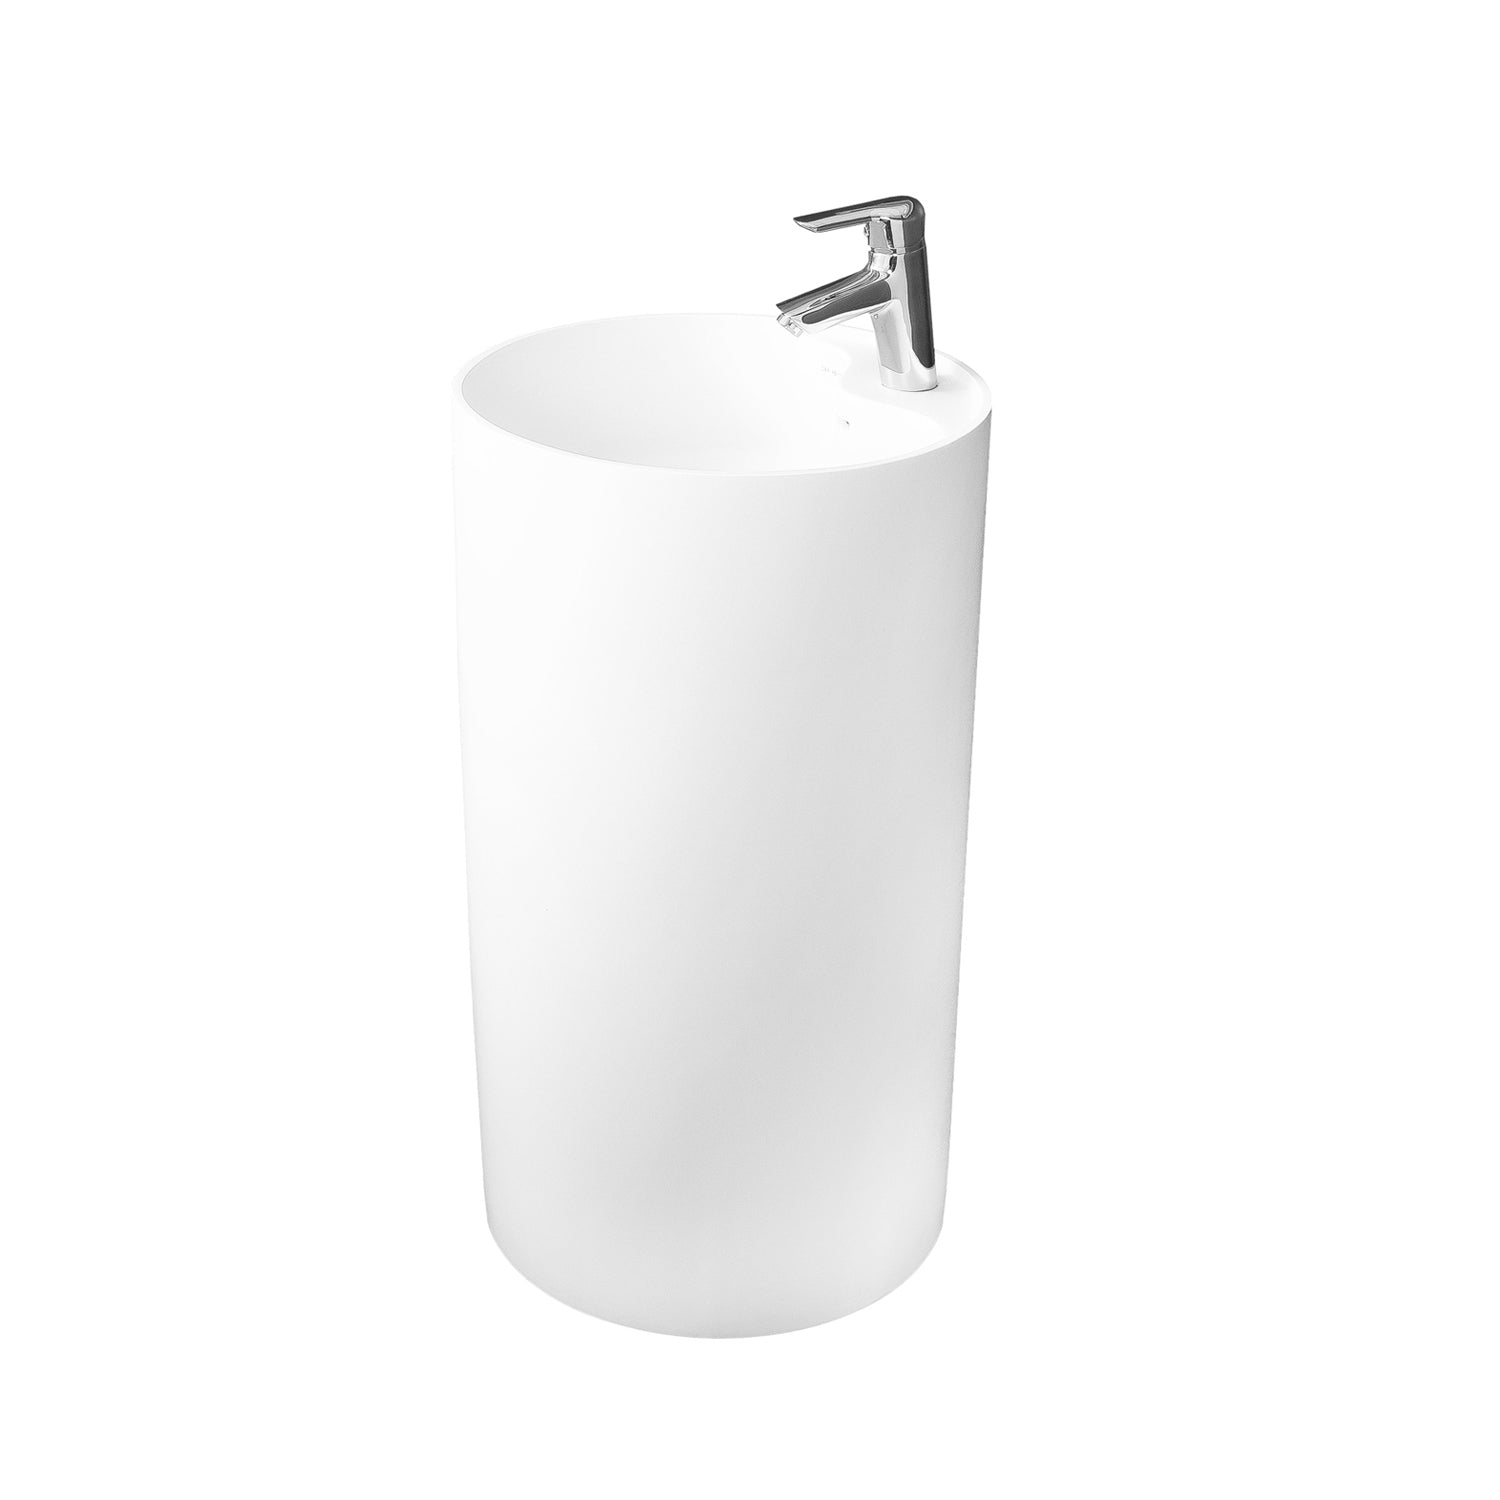 Lavabo de baño independiente de pedestal redondo de superficie sólida DAX, acabado blanco mate, 17-1/2 x 17-1/2 x 31-1/2 pulgadas (DAX-AB-1380)